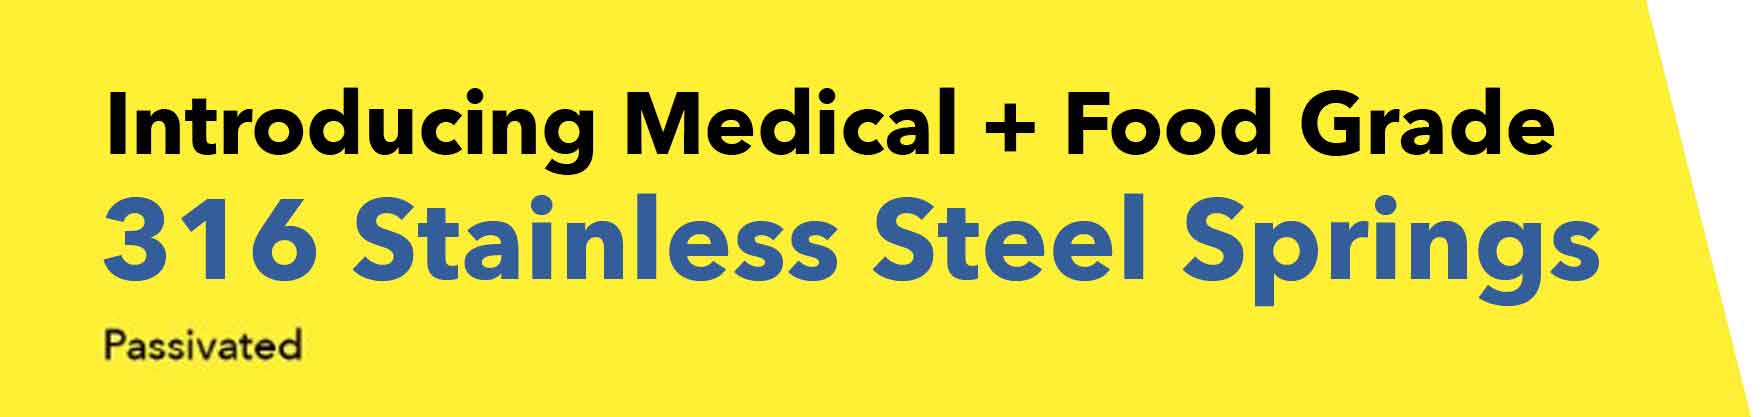 Introducing Medical & Food Grade 316 Stainless Steel Springs